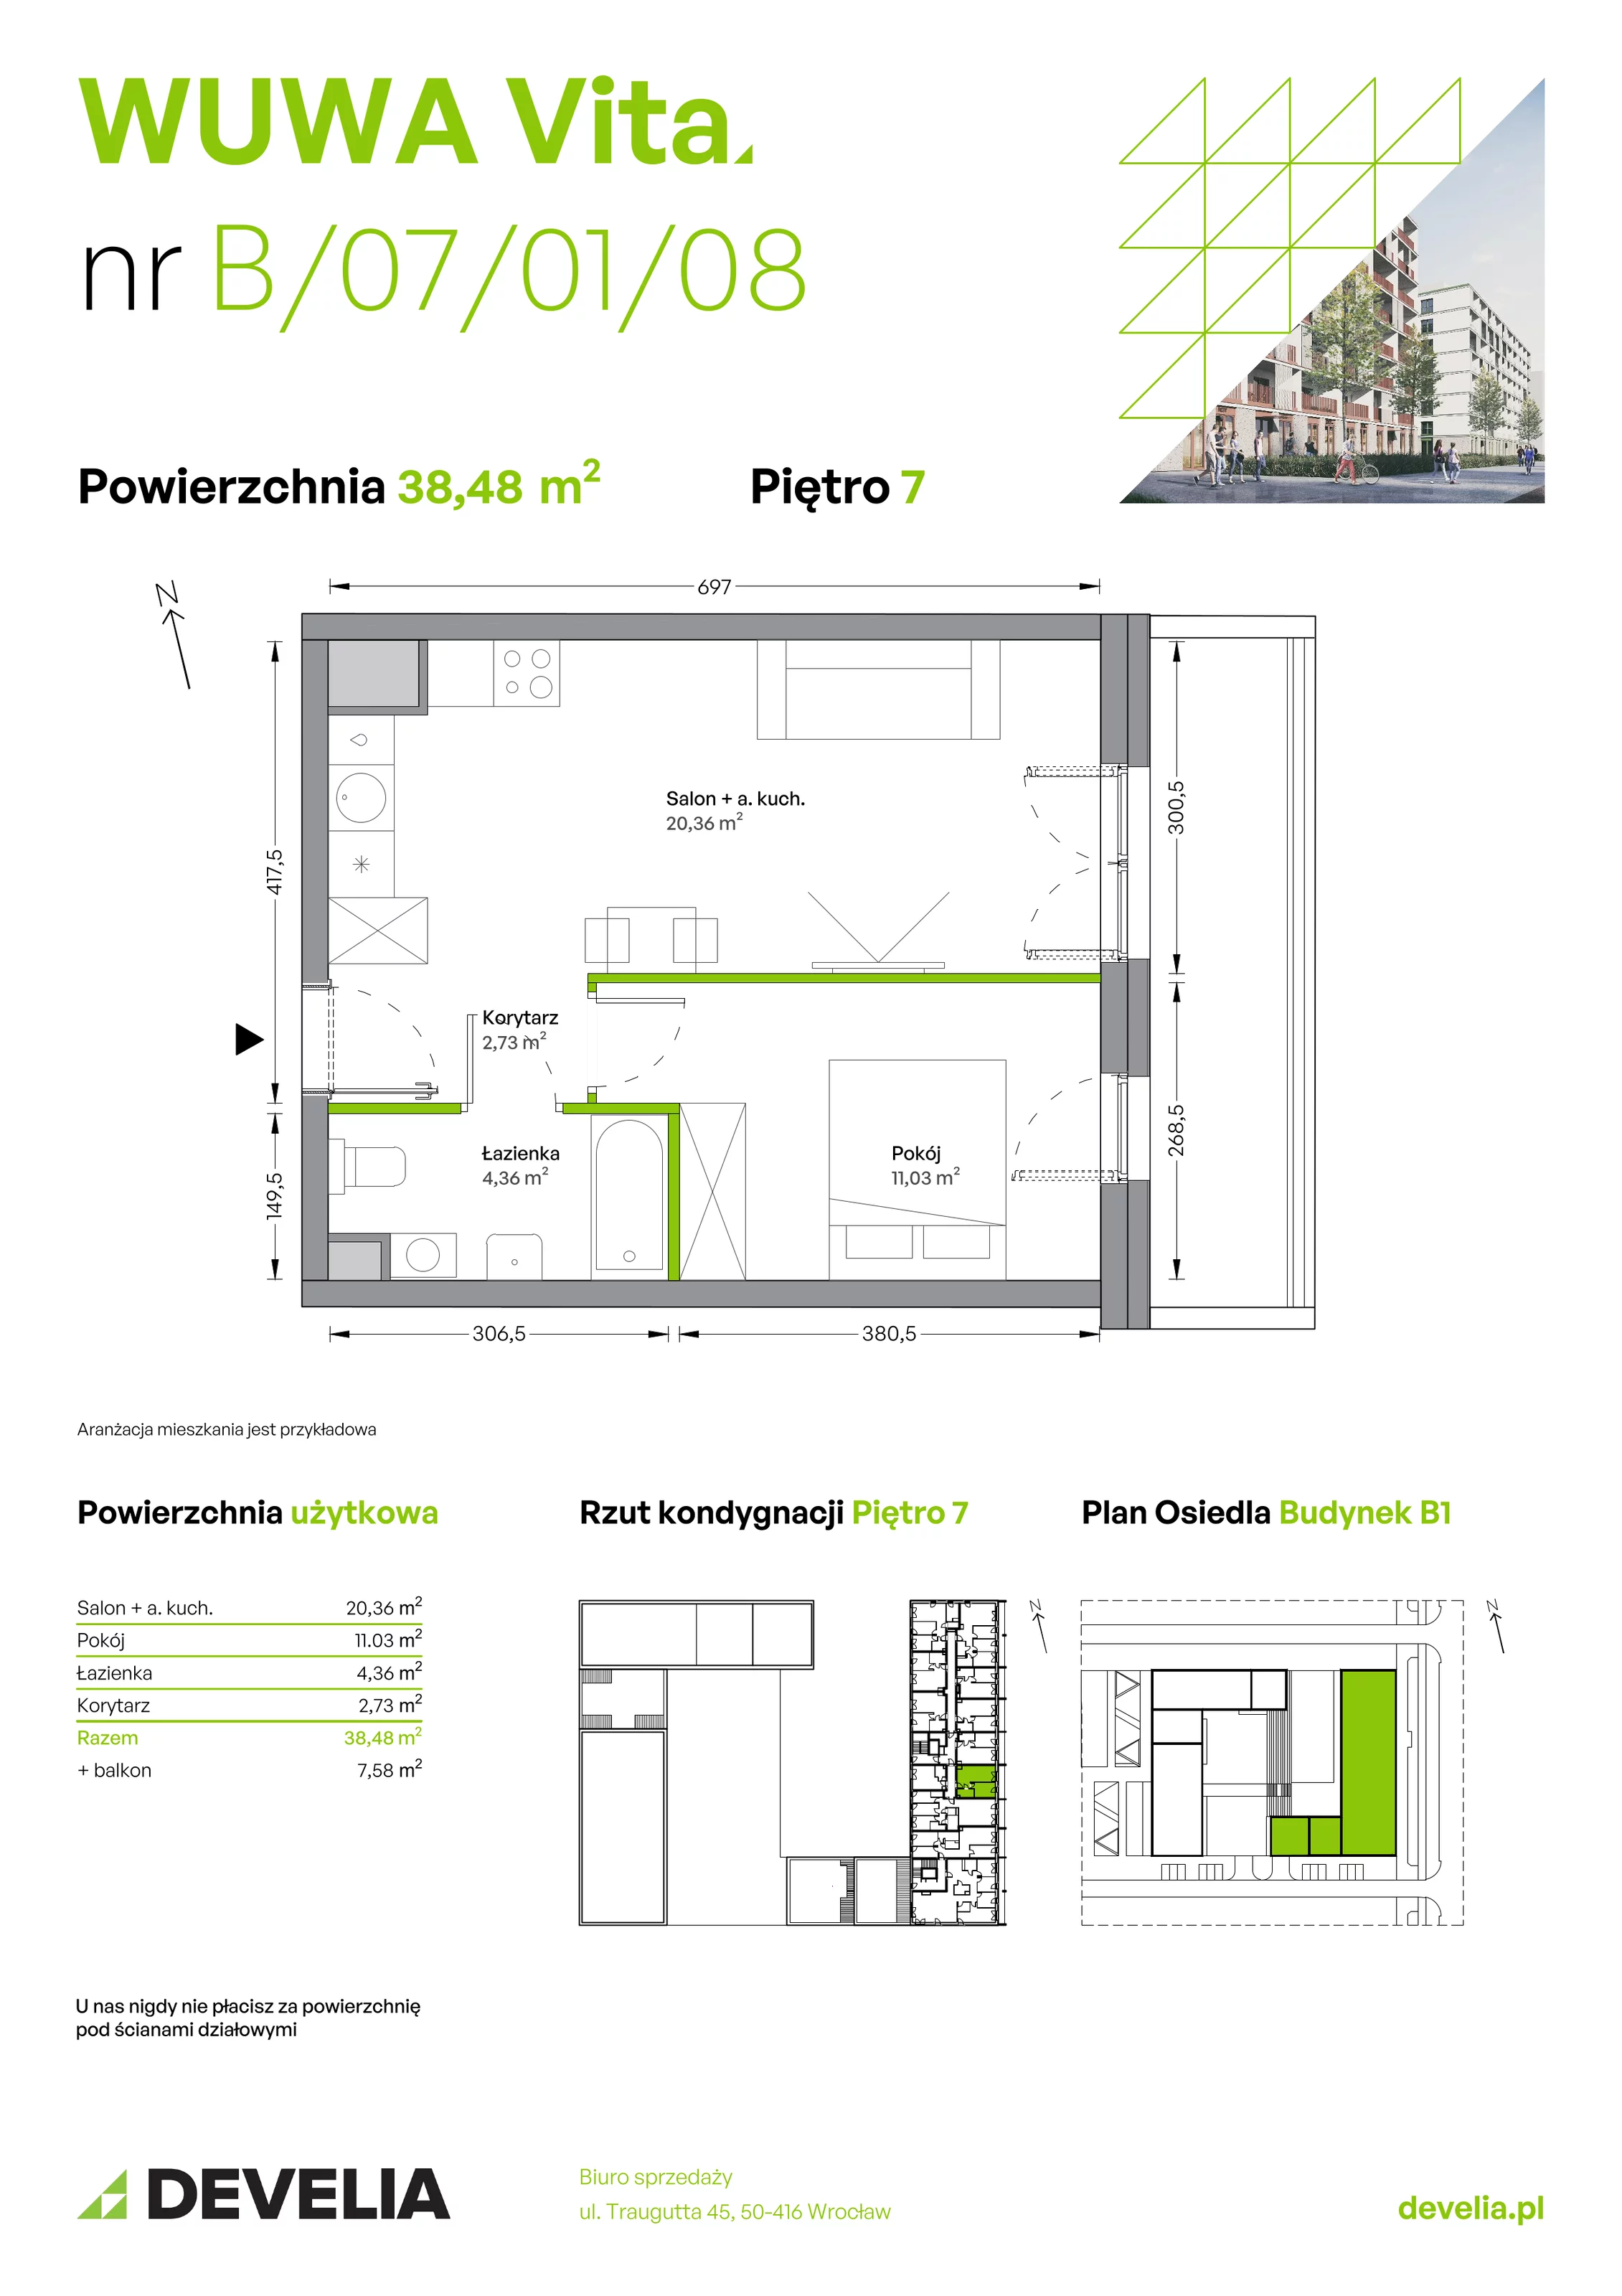 Mieszkanie 38,48 m², piętro 7, oferta nr B.07.01.08, WUWA Vita, Wrocław, Żerniki, Fabryczna, ul. Tadeusza Brzozy